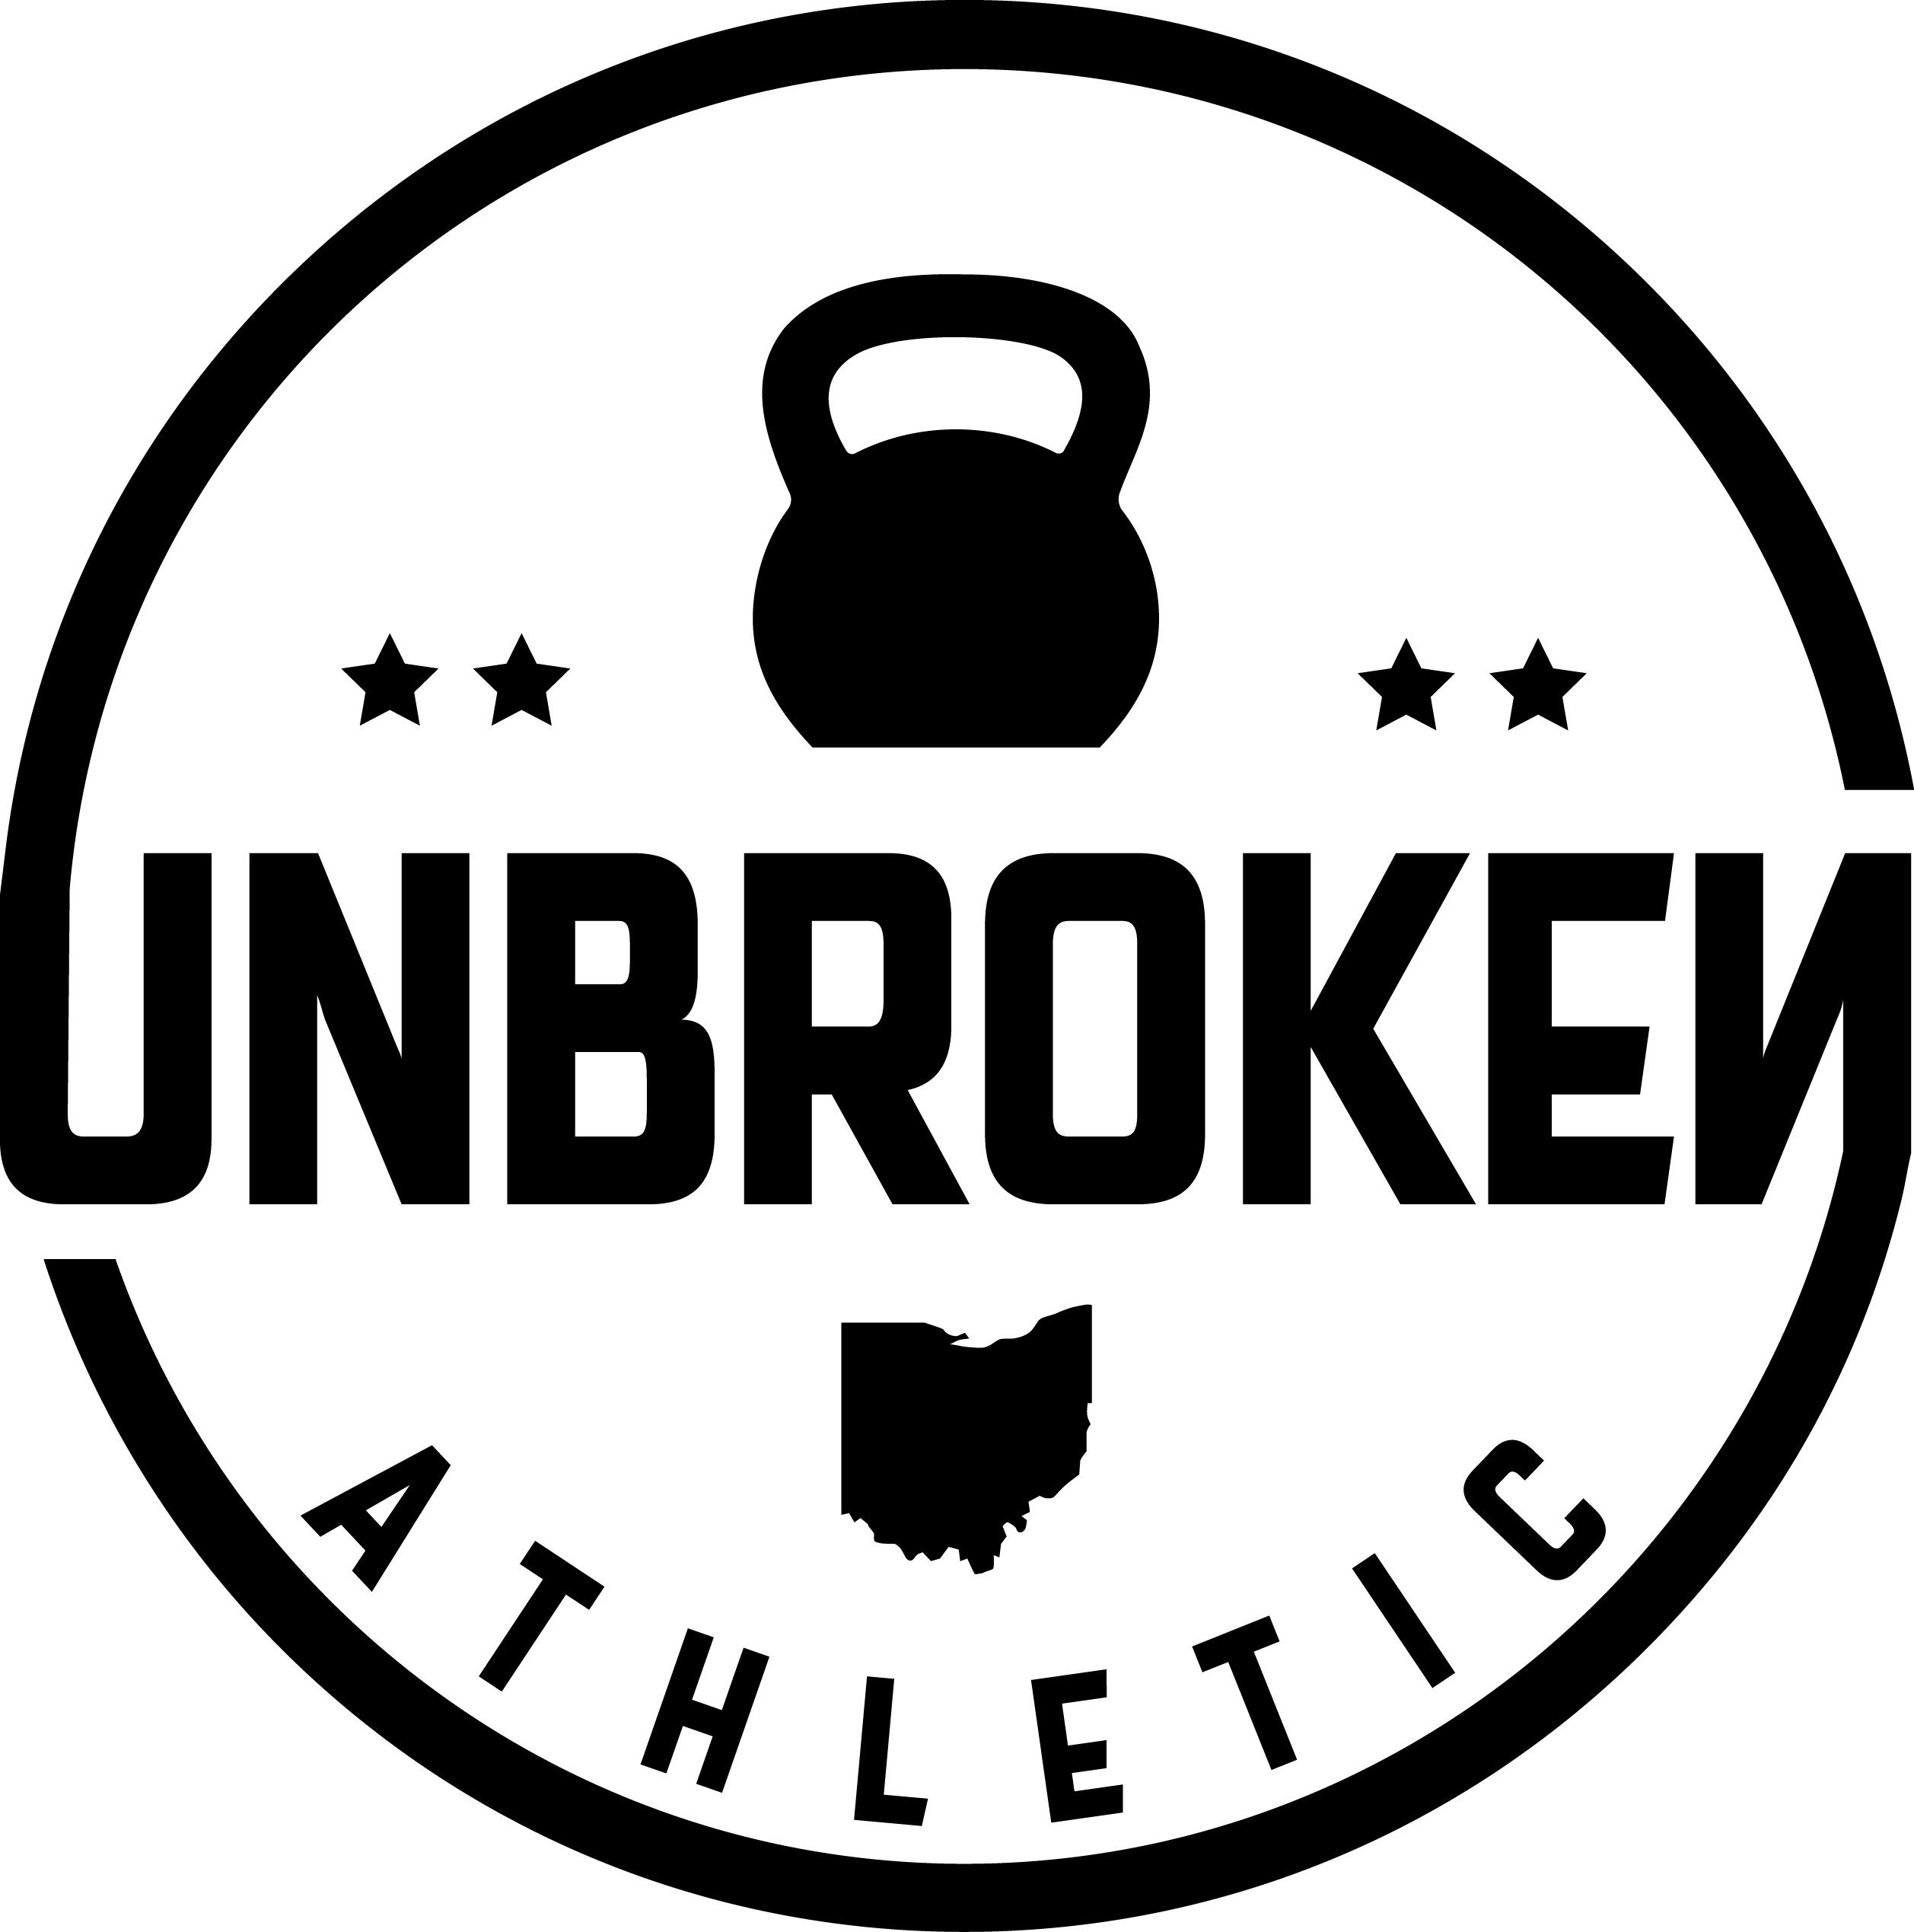 Unbroken Athletic logo